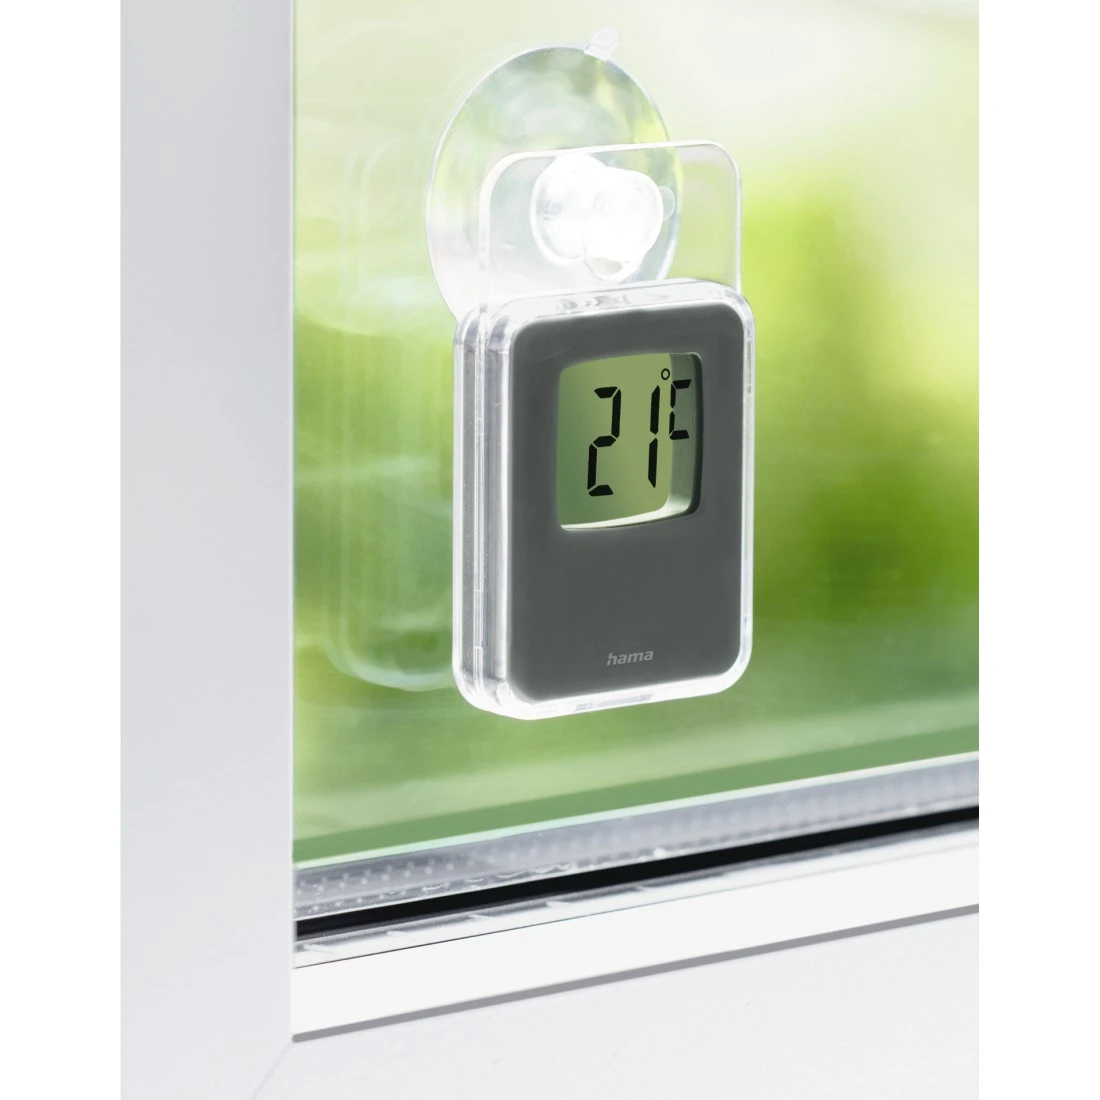 Fensterthermometer für innen und außen, digital, 7,5 x 4,6 cm